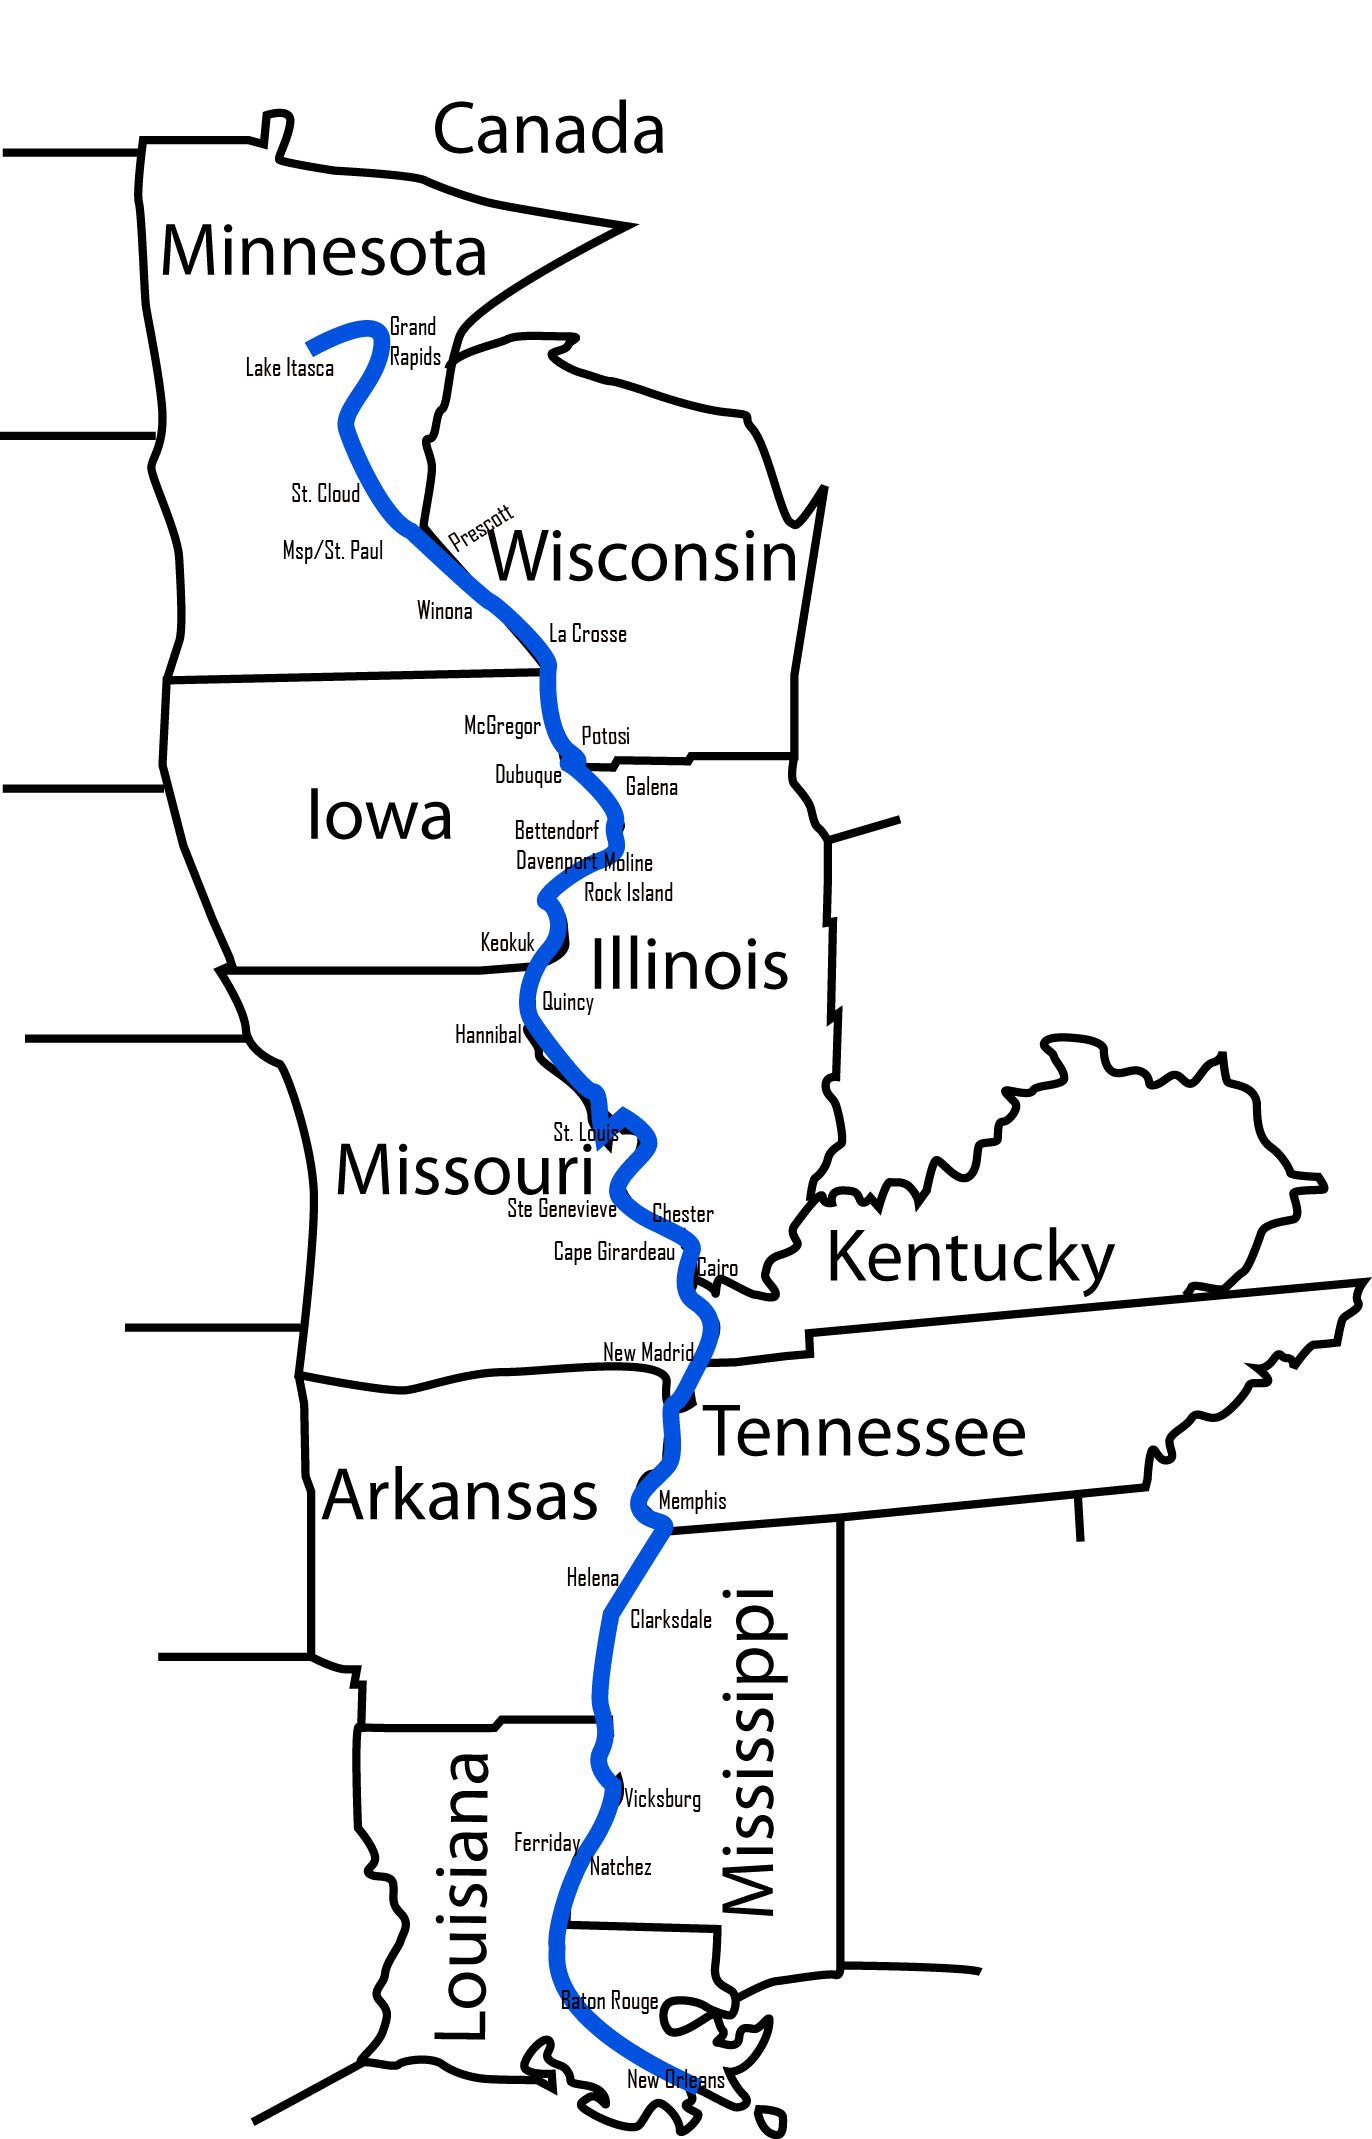 Река миссисипи течет в направлении. Миссисипи с притоком Миссури на карте. Притоки Миссисипи на карте. Исток реки Миссисипи на карте. Течение реки Миссисипи на карте.